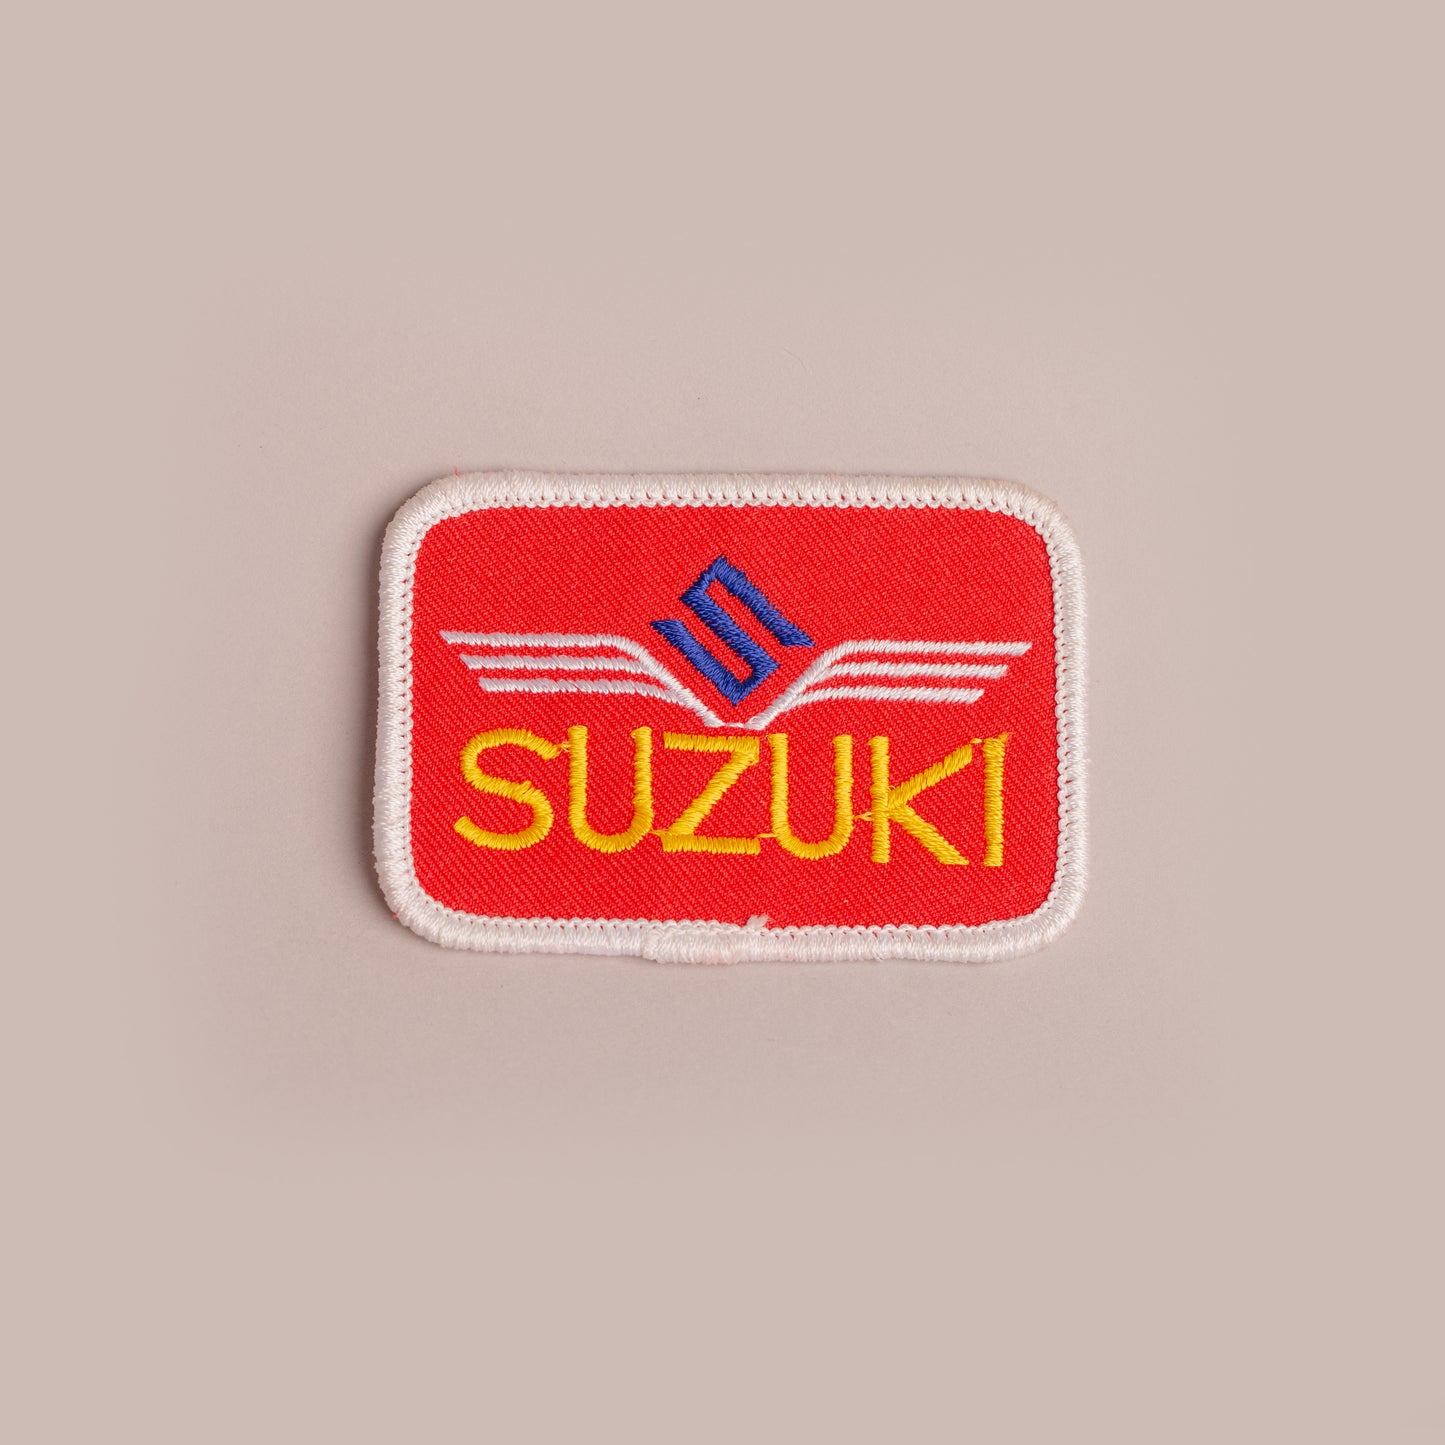 Vintage Patch - Suzuki